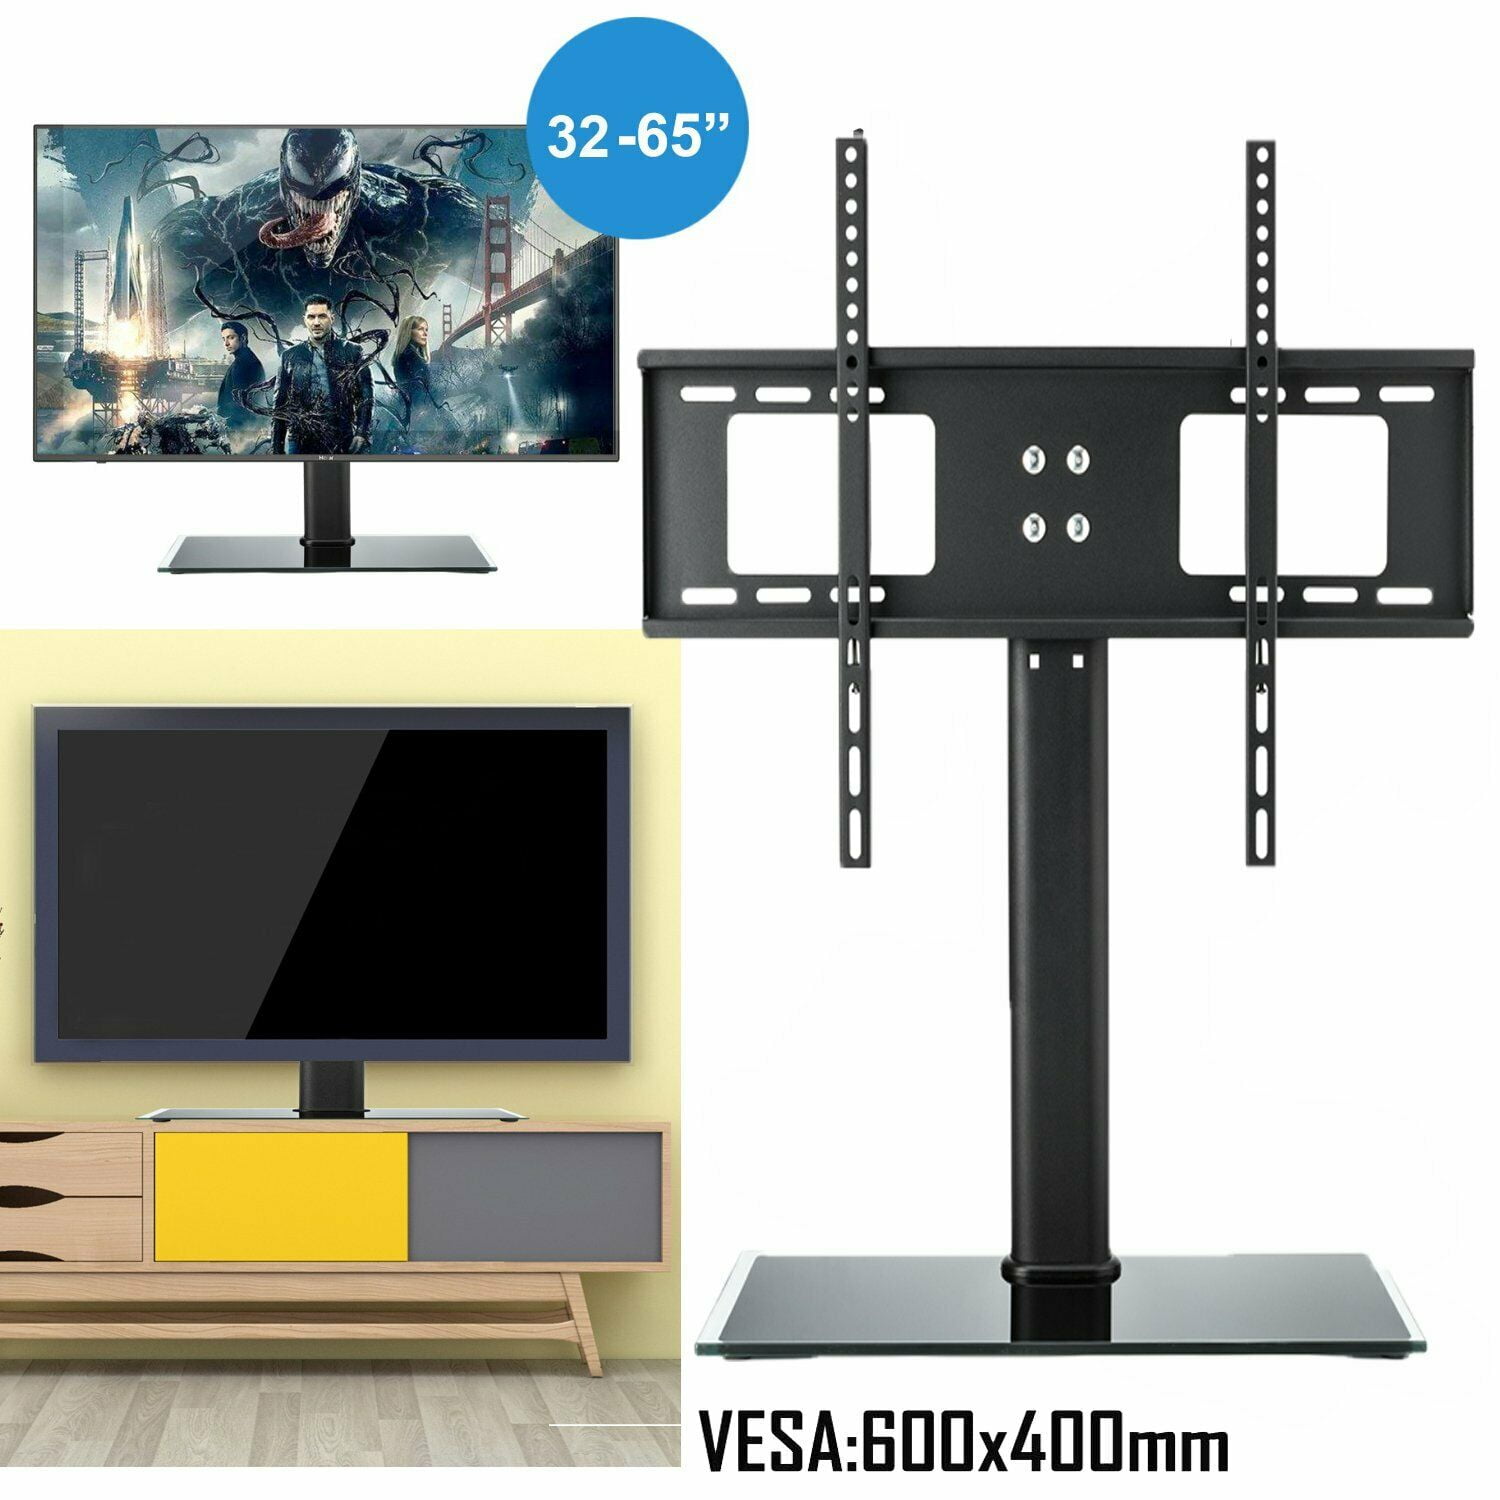 Adjustable Universal TV Stand Base Tabletop VESA Pedestal Mount LCD LED 39" 65" 